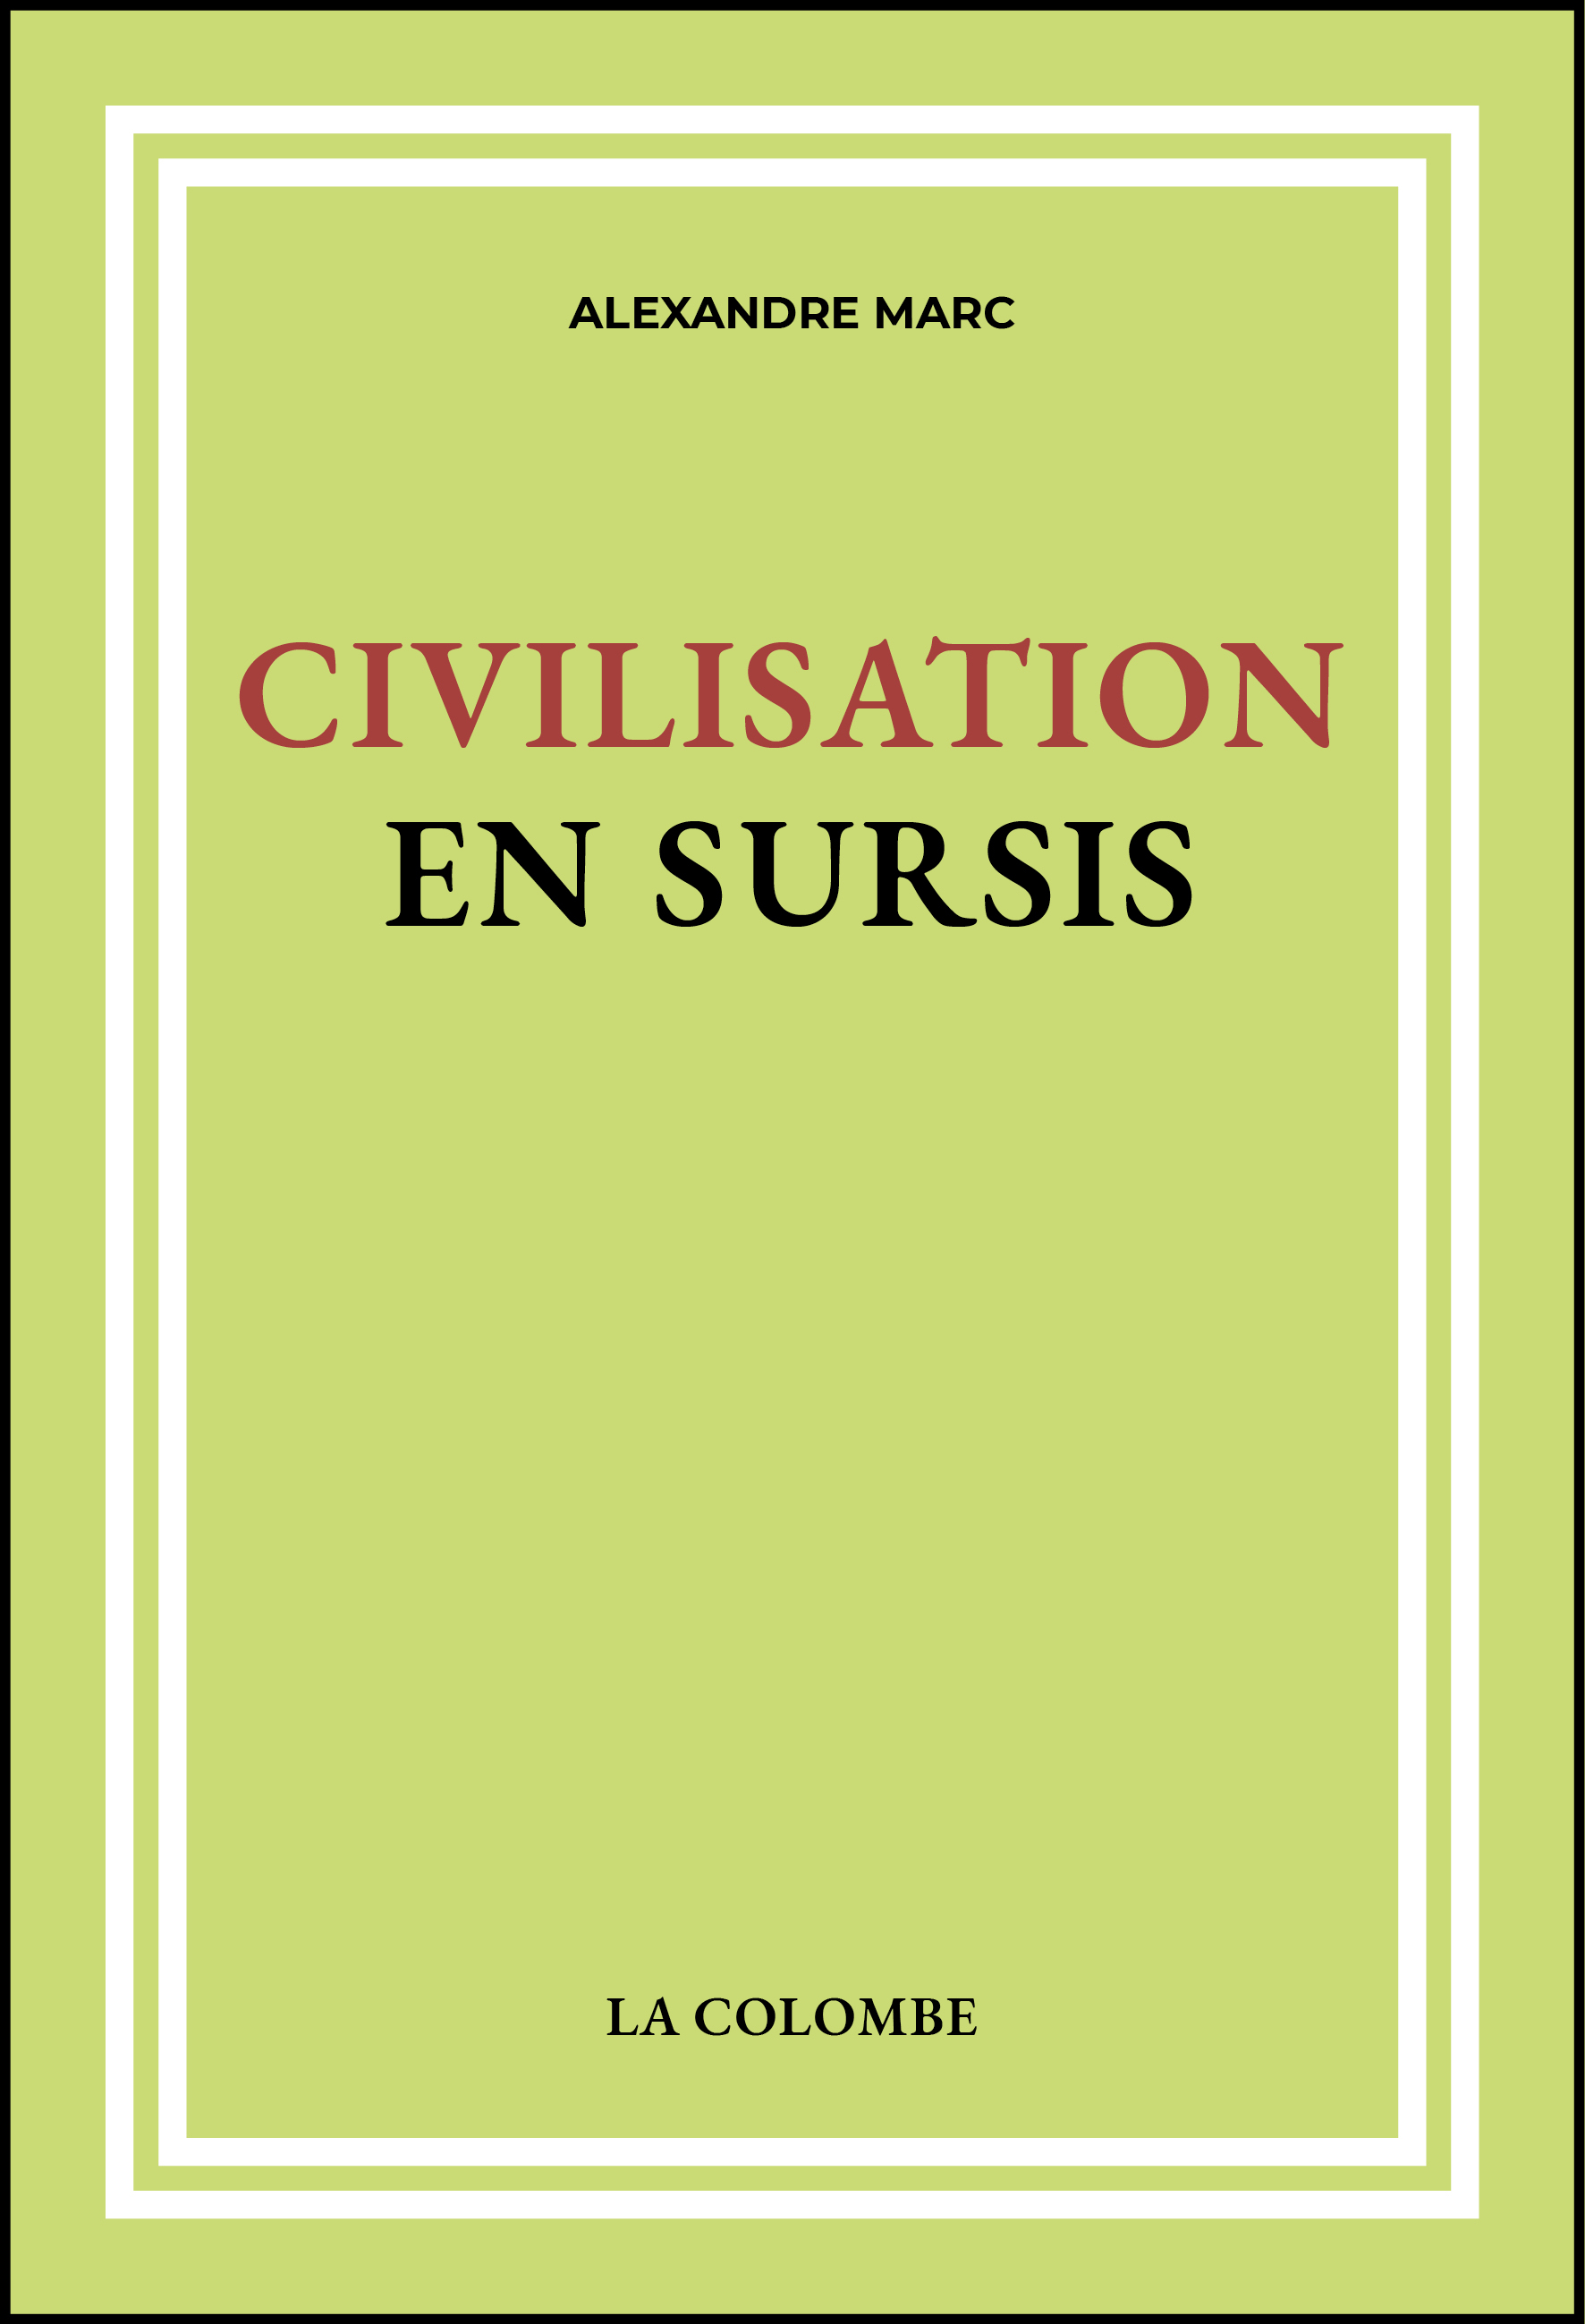 Civilisation en sursis | Europe. Terre décisive | L’Europe dans le monde